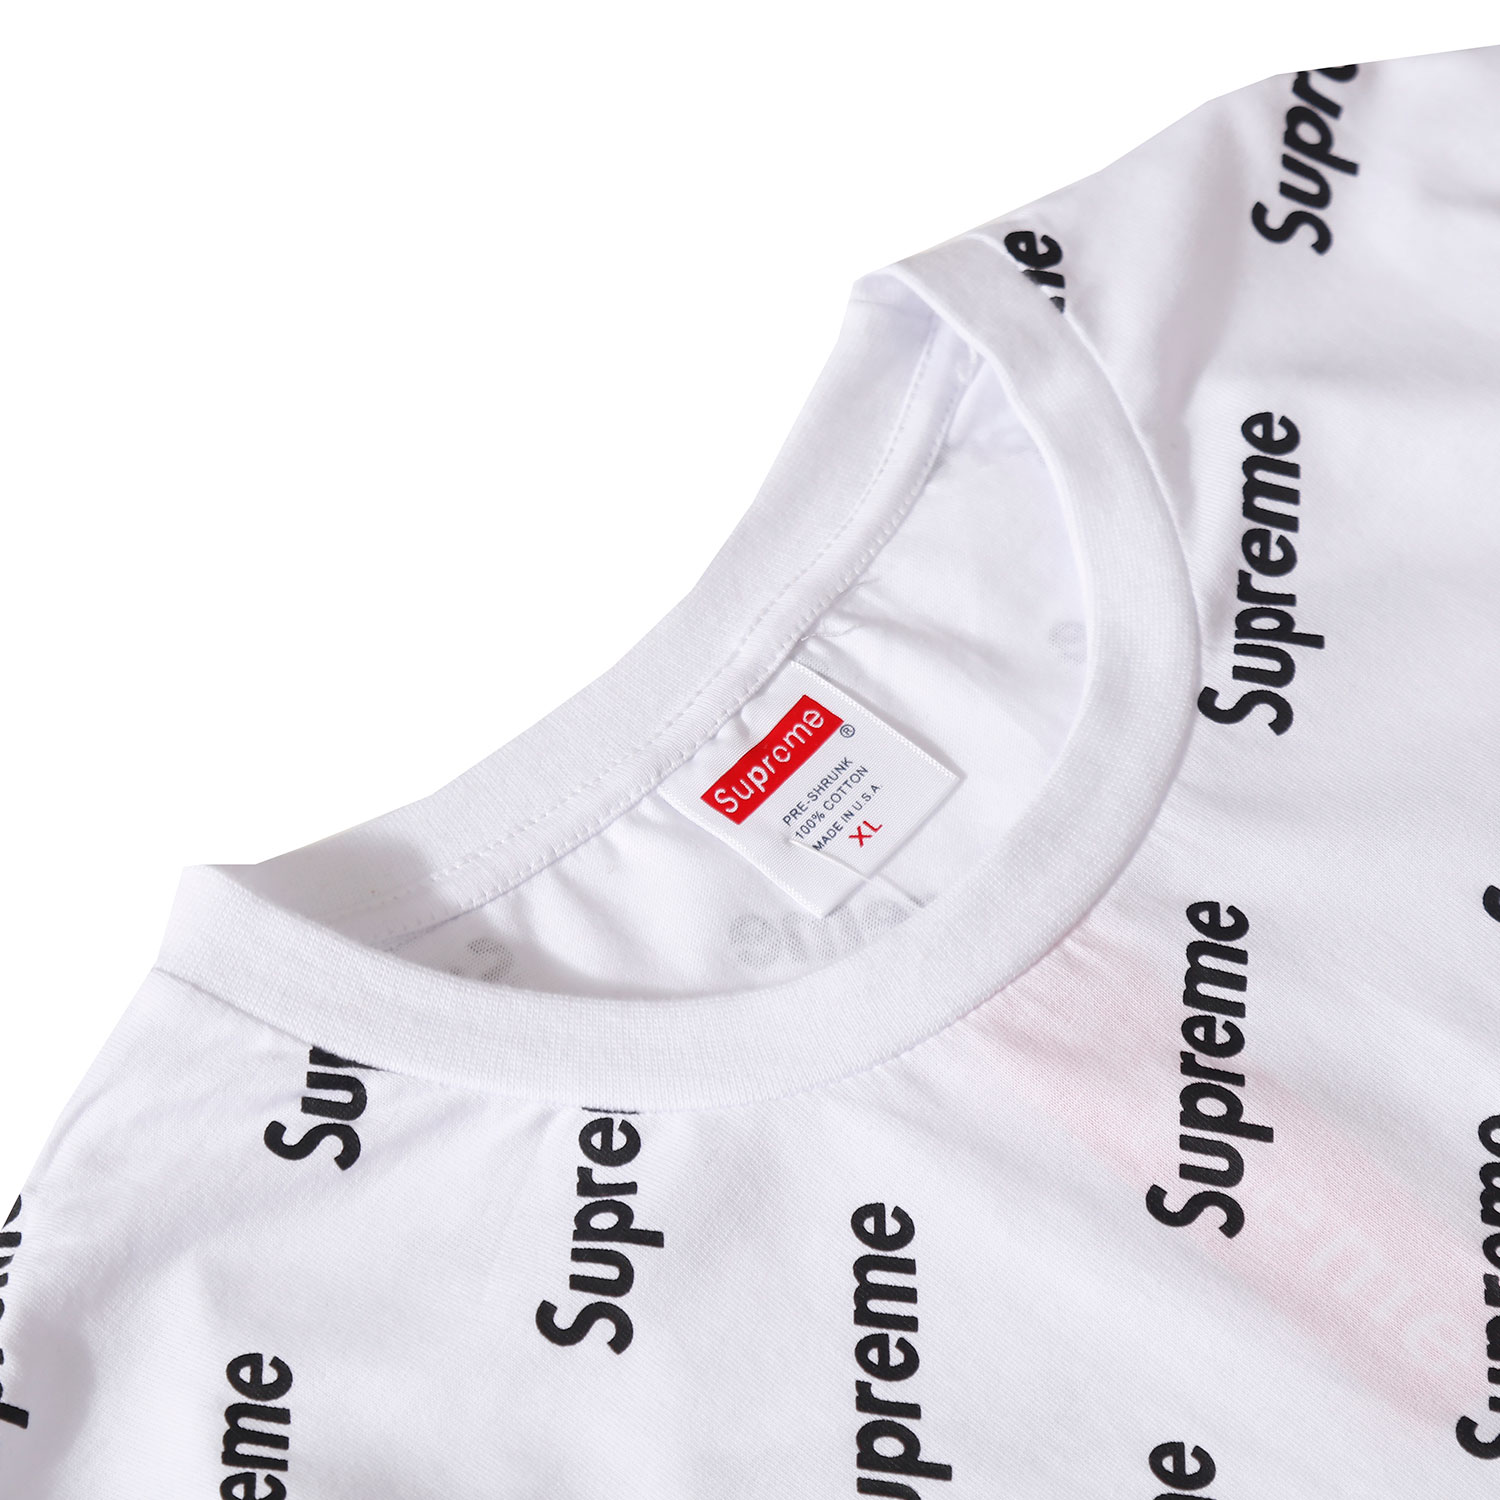 シュプリームtシャツ カットソー 夏 メンズ コットン 半袖シャツ レディース ブランド supremeティーシャツ トップス